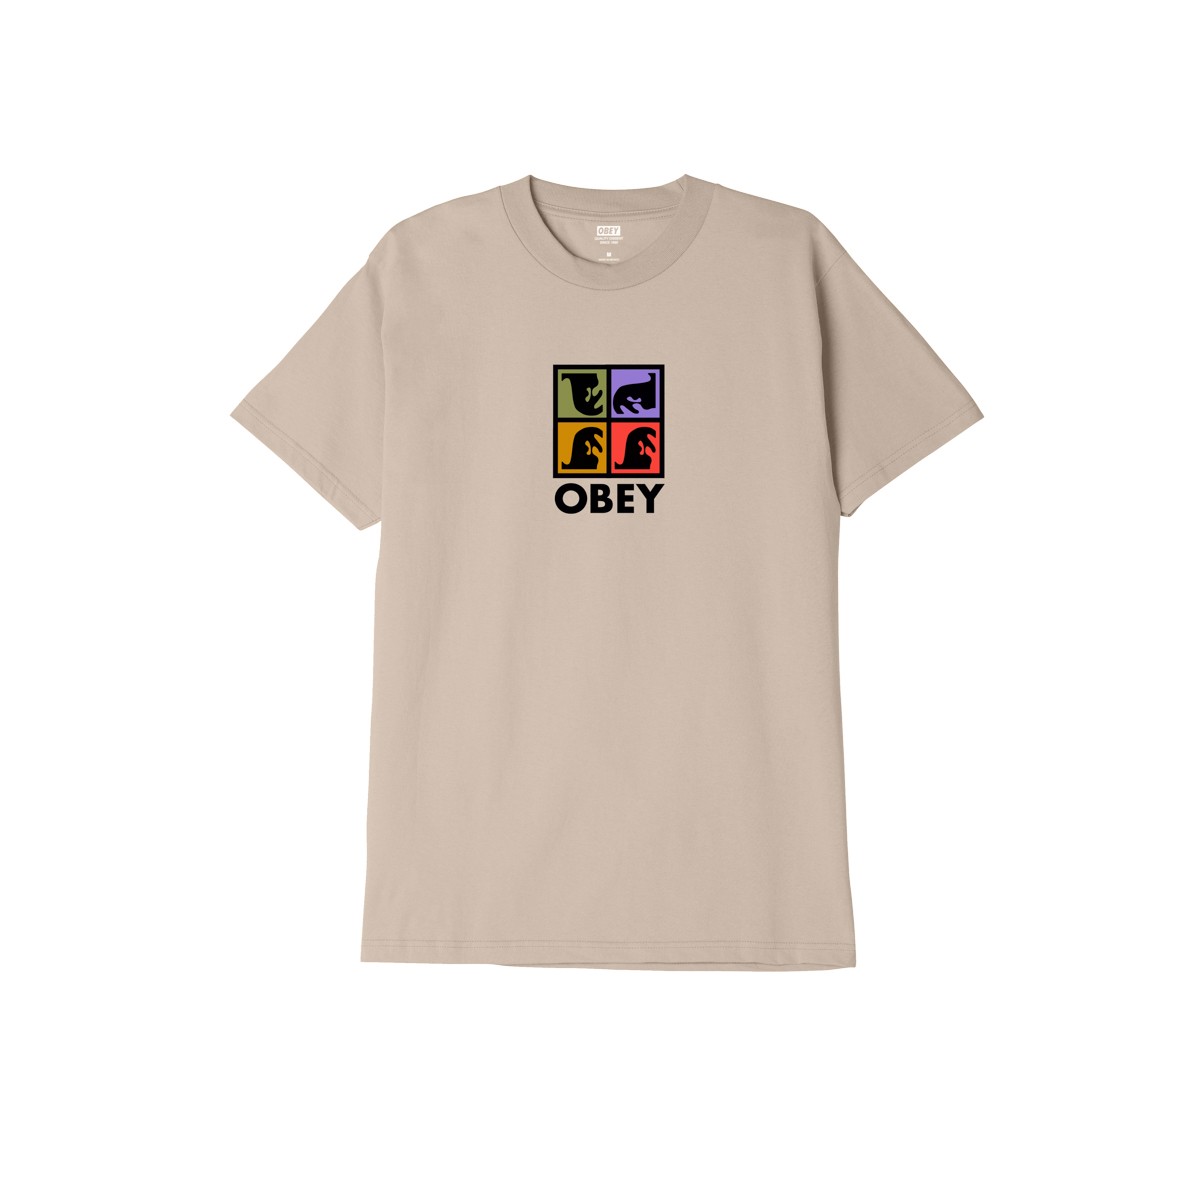 OBEY - T-shirt beige sable imprimé multicolor